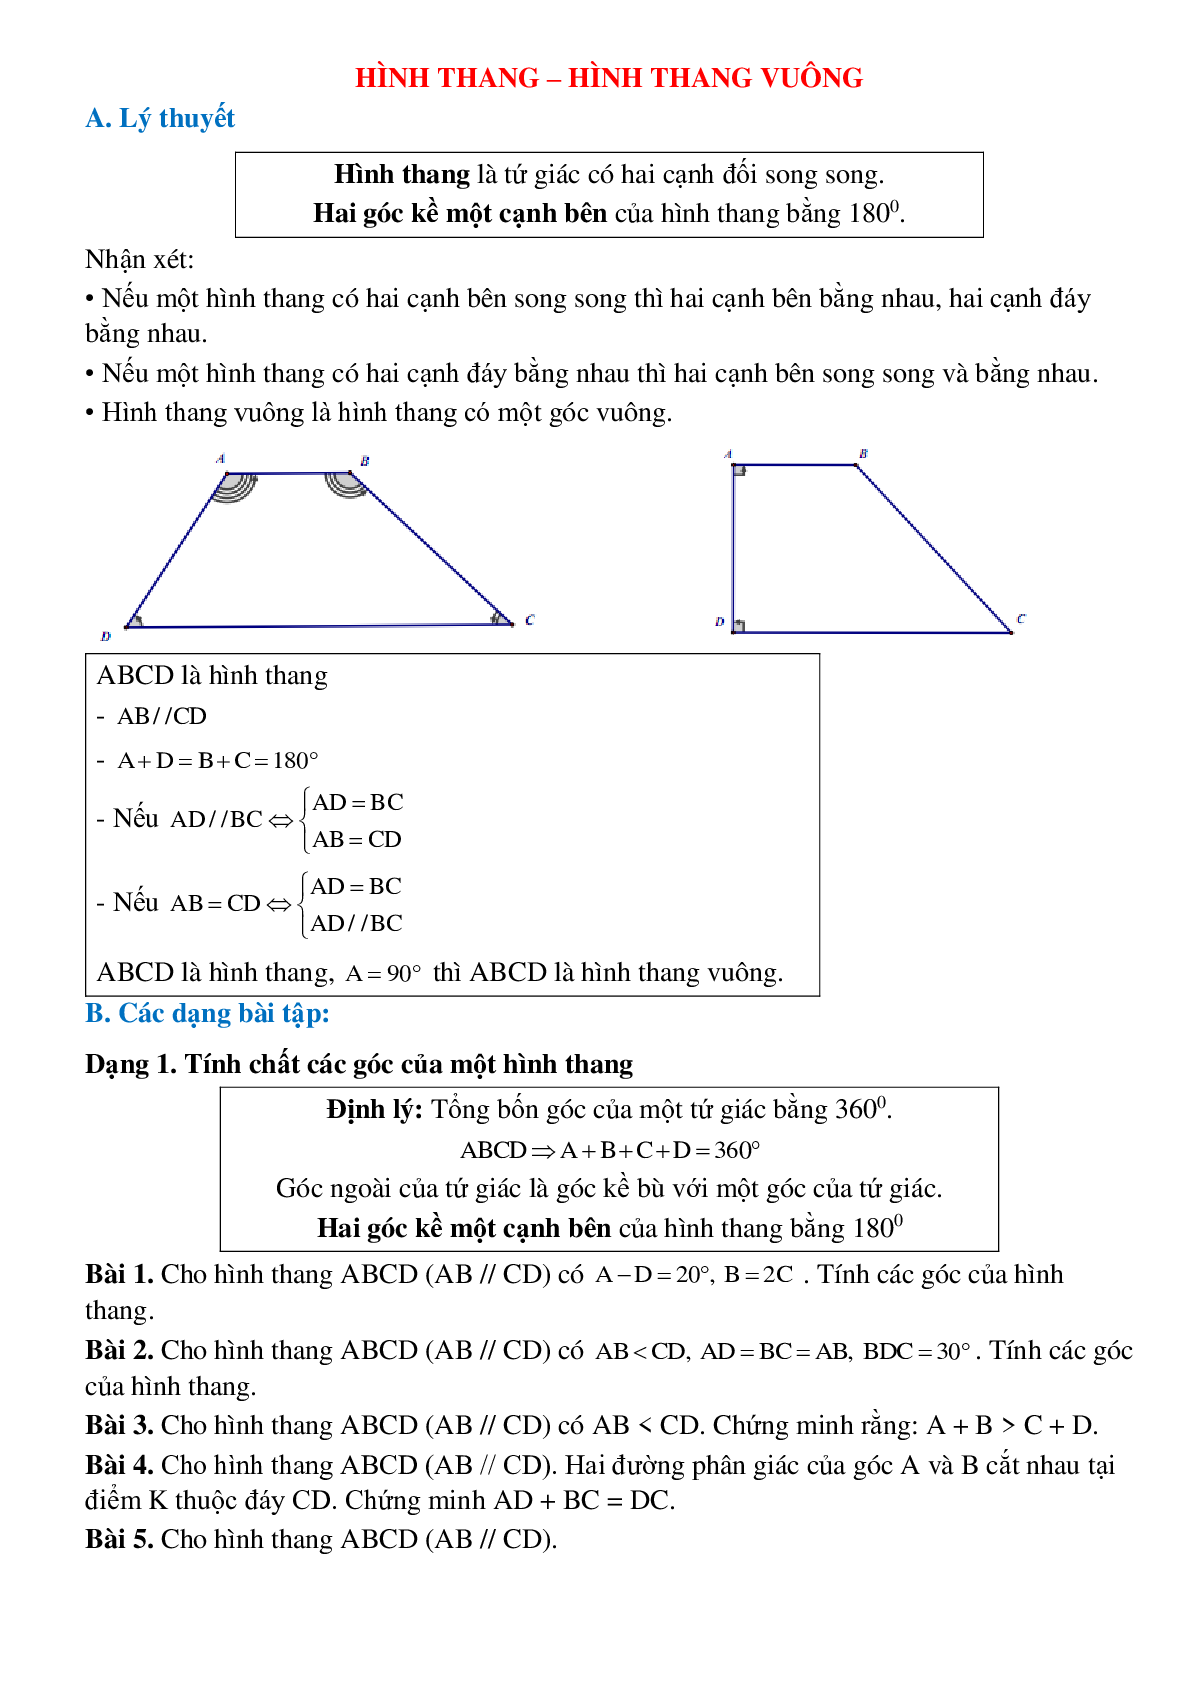 Hệ thống bài tập điển hình Hình thang - Hình thang vuông toán lớp 8 chọn lọc (trang 1)